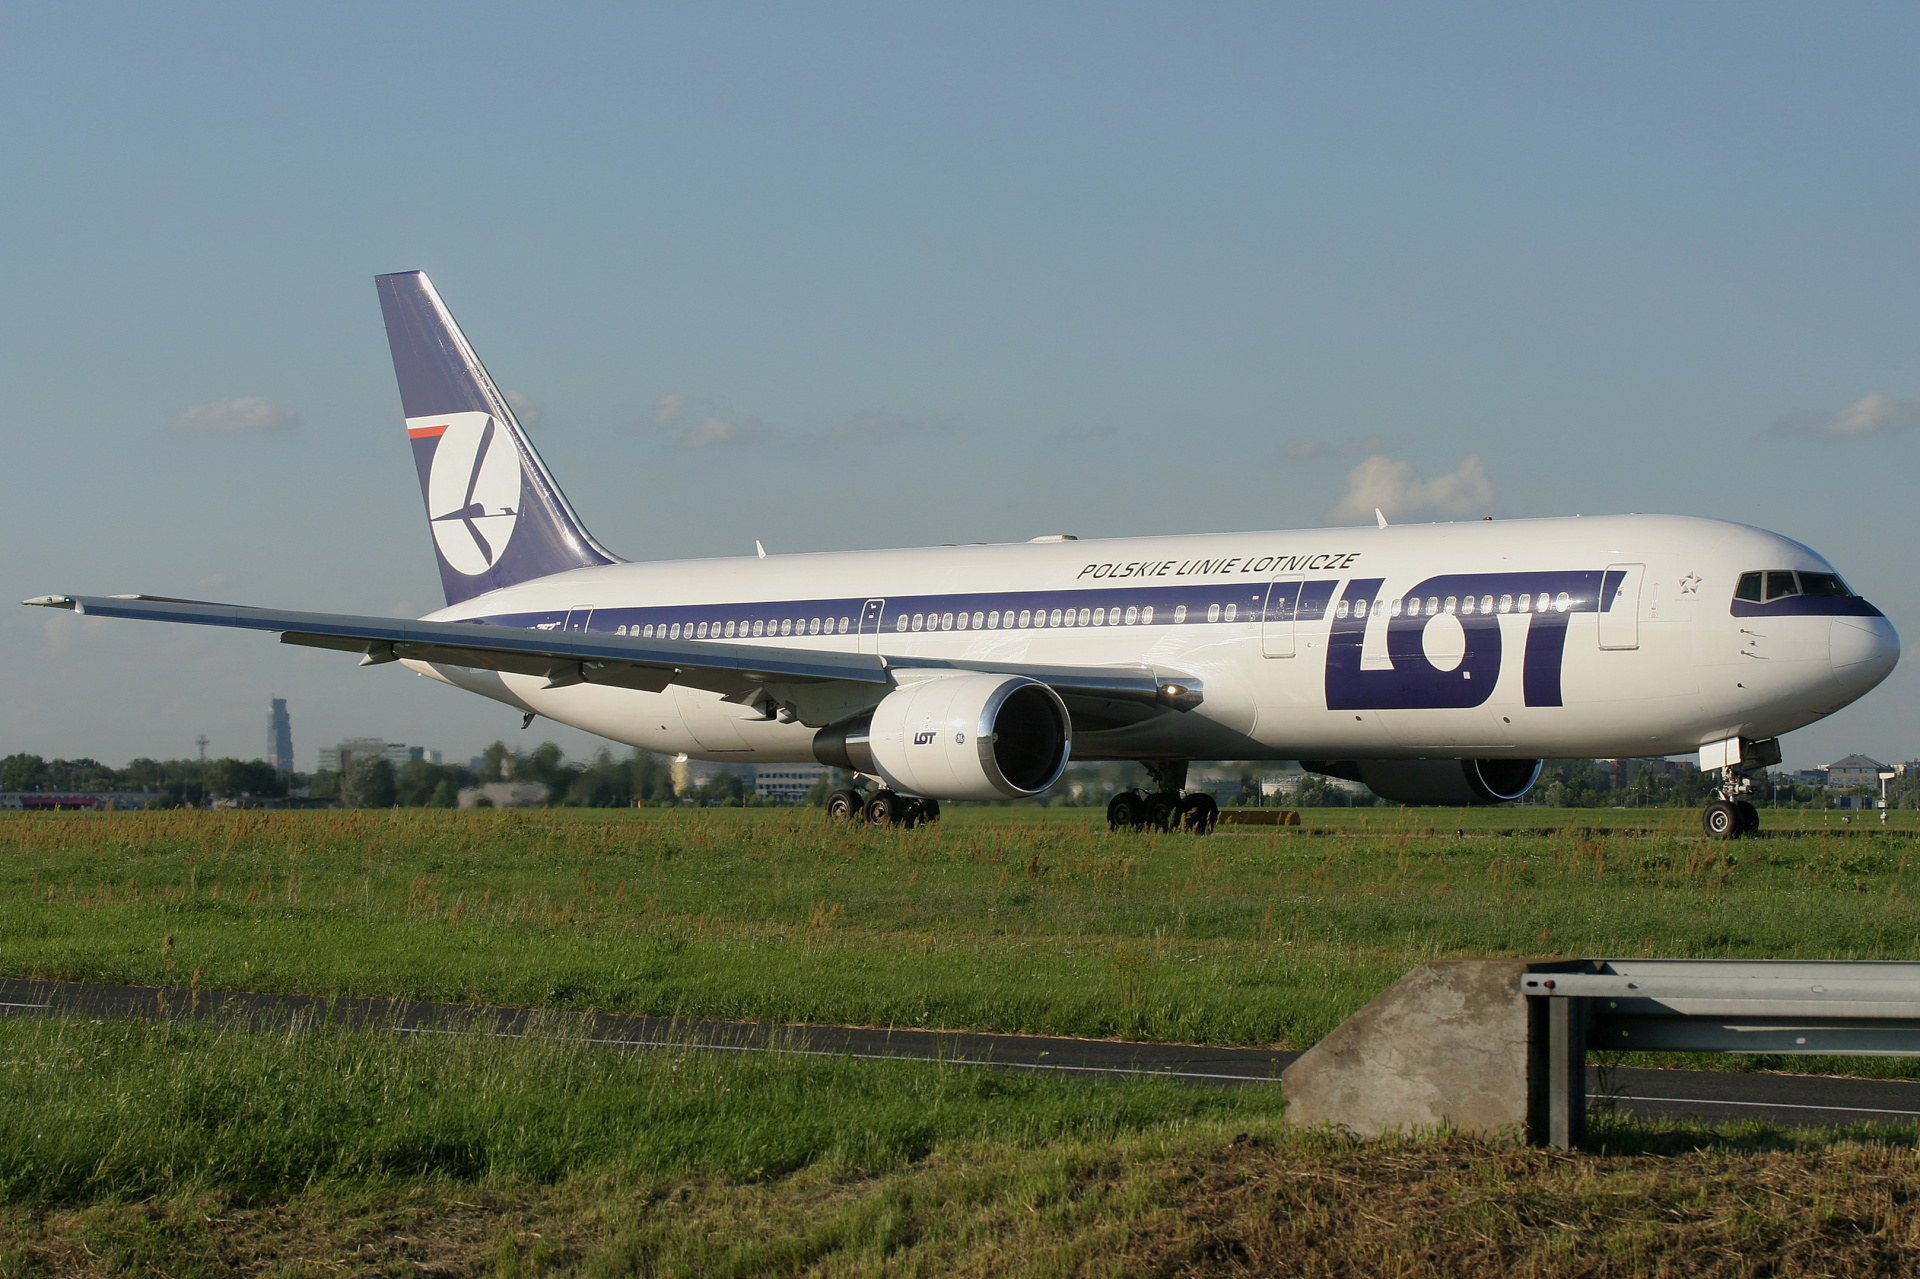 SP-LPG (Samoloty » Spotting na EPWA » Boeing 767-300 » Polskie Linie Lotnicze LOT)